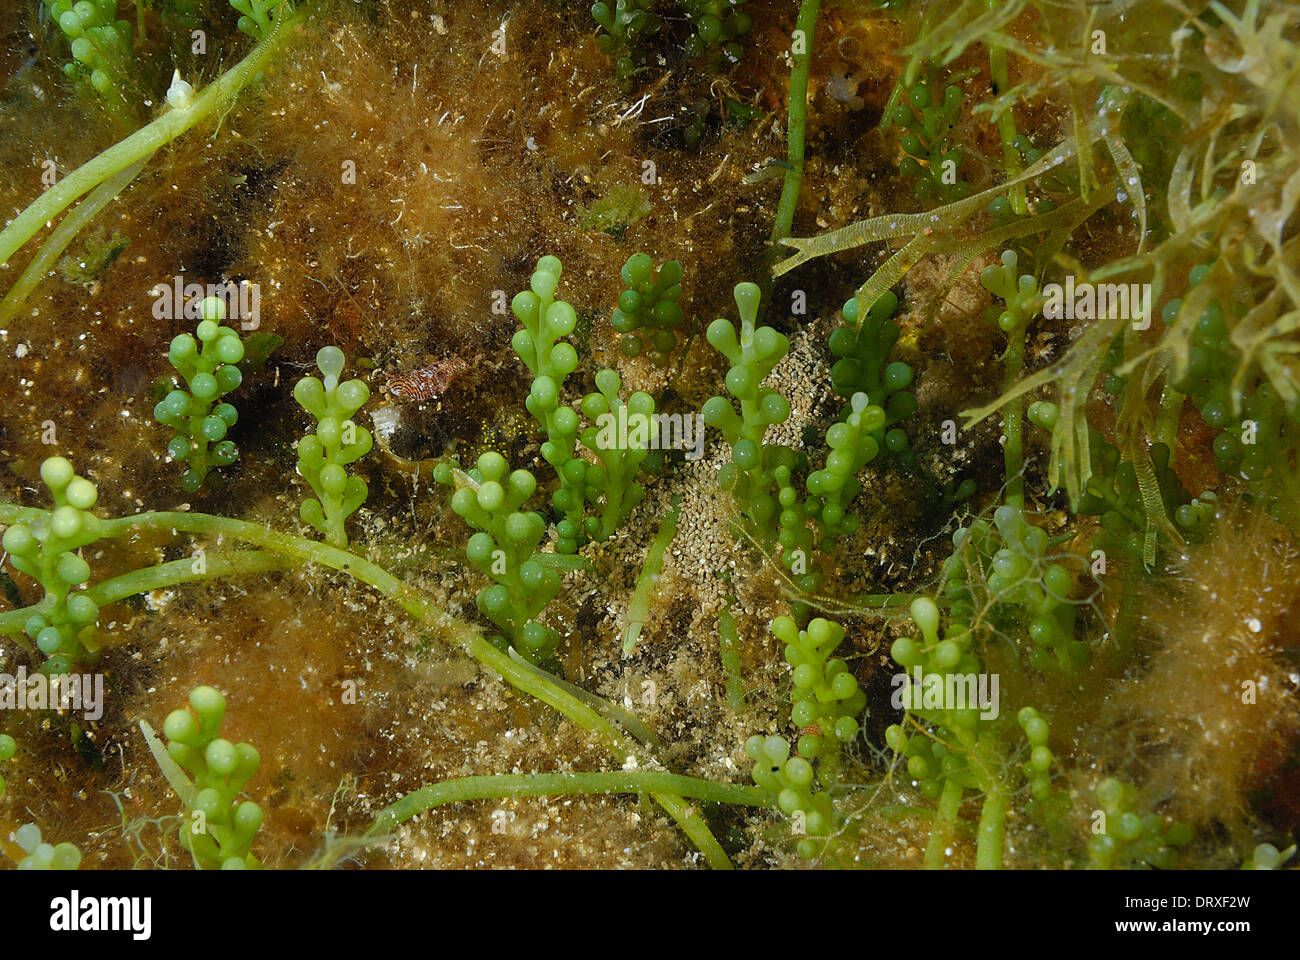 Allocton Alga invasiva Caulerpa racemosa var. cylindracea, Caulerpaceae, Isola di Capraia, Toscana, Italia, Mare Mediterraneo Foto Stock